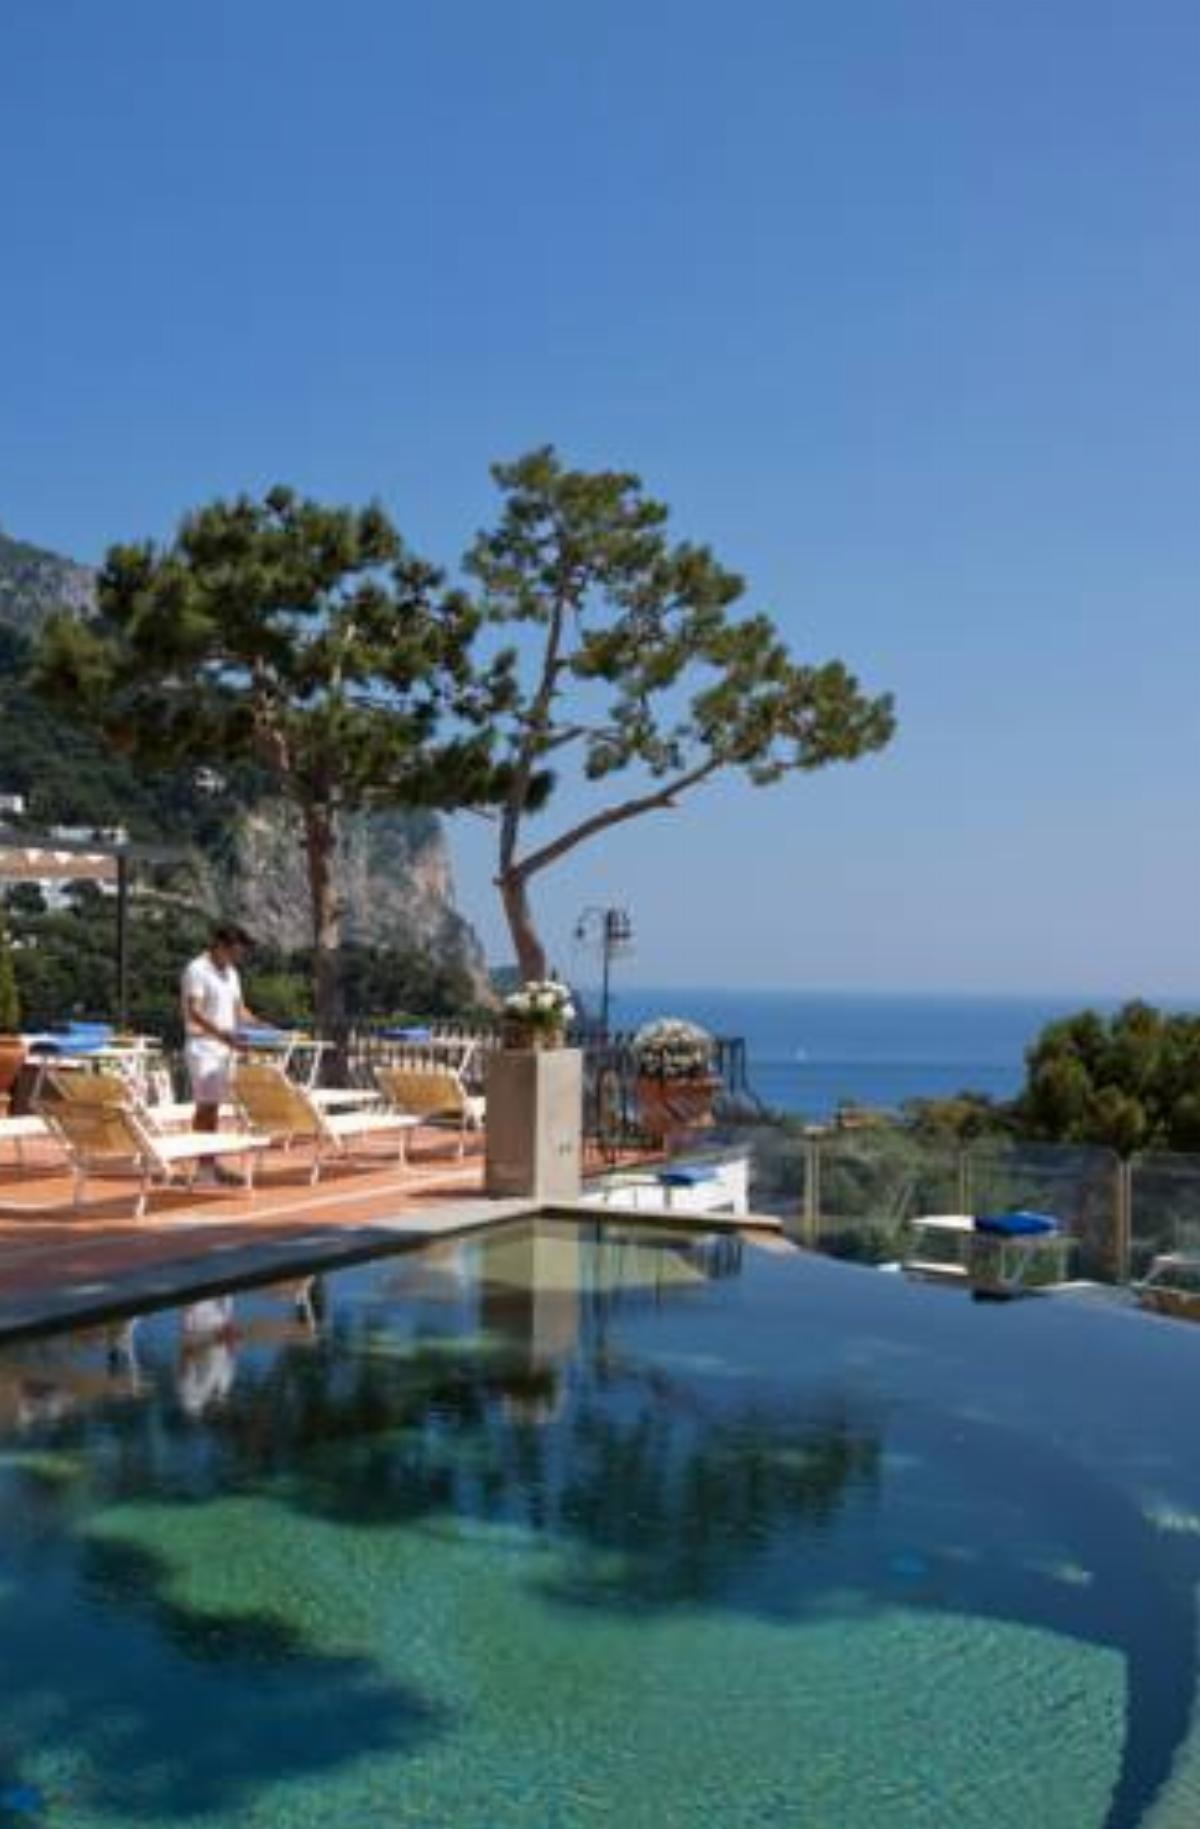 Casa Morgano Hotel Capri Italy